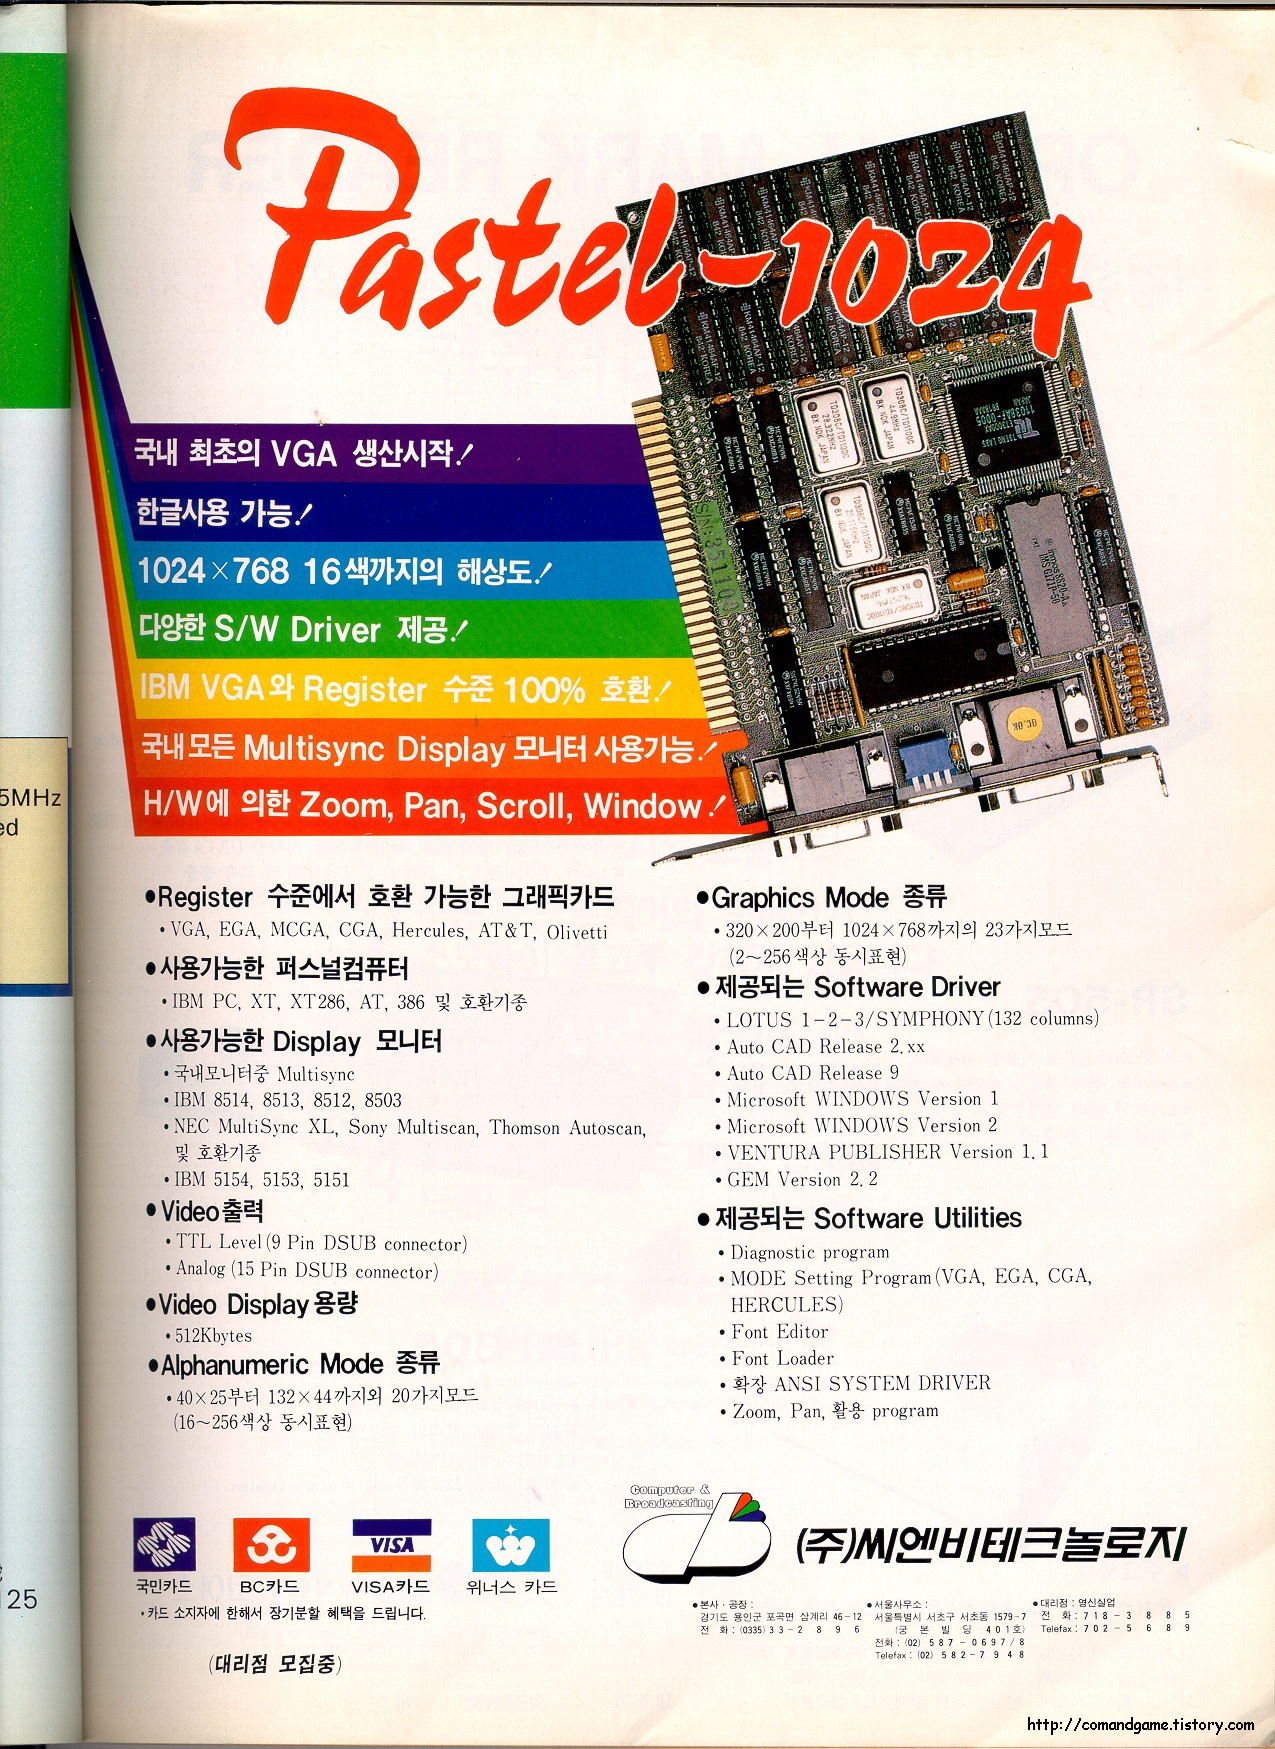 파스텔-1024 (PASTEL-1024) 국내최초 VGA 카드 잡지 광고